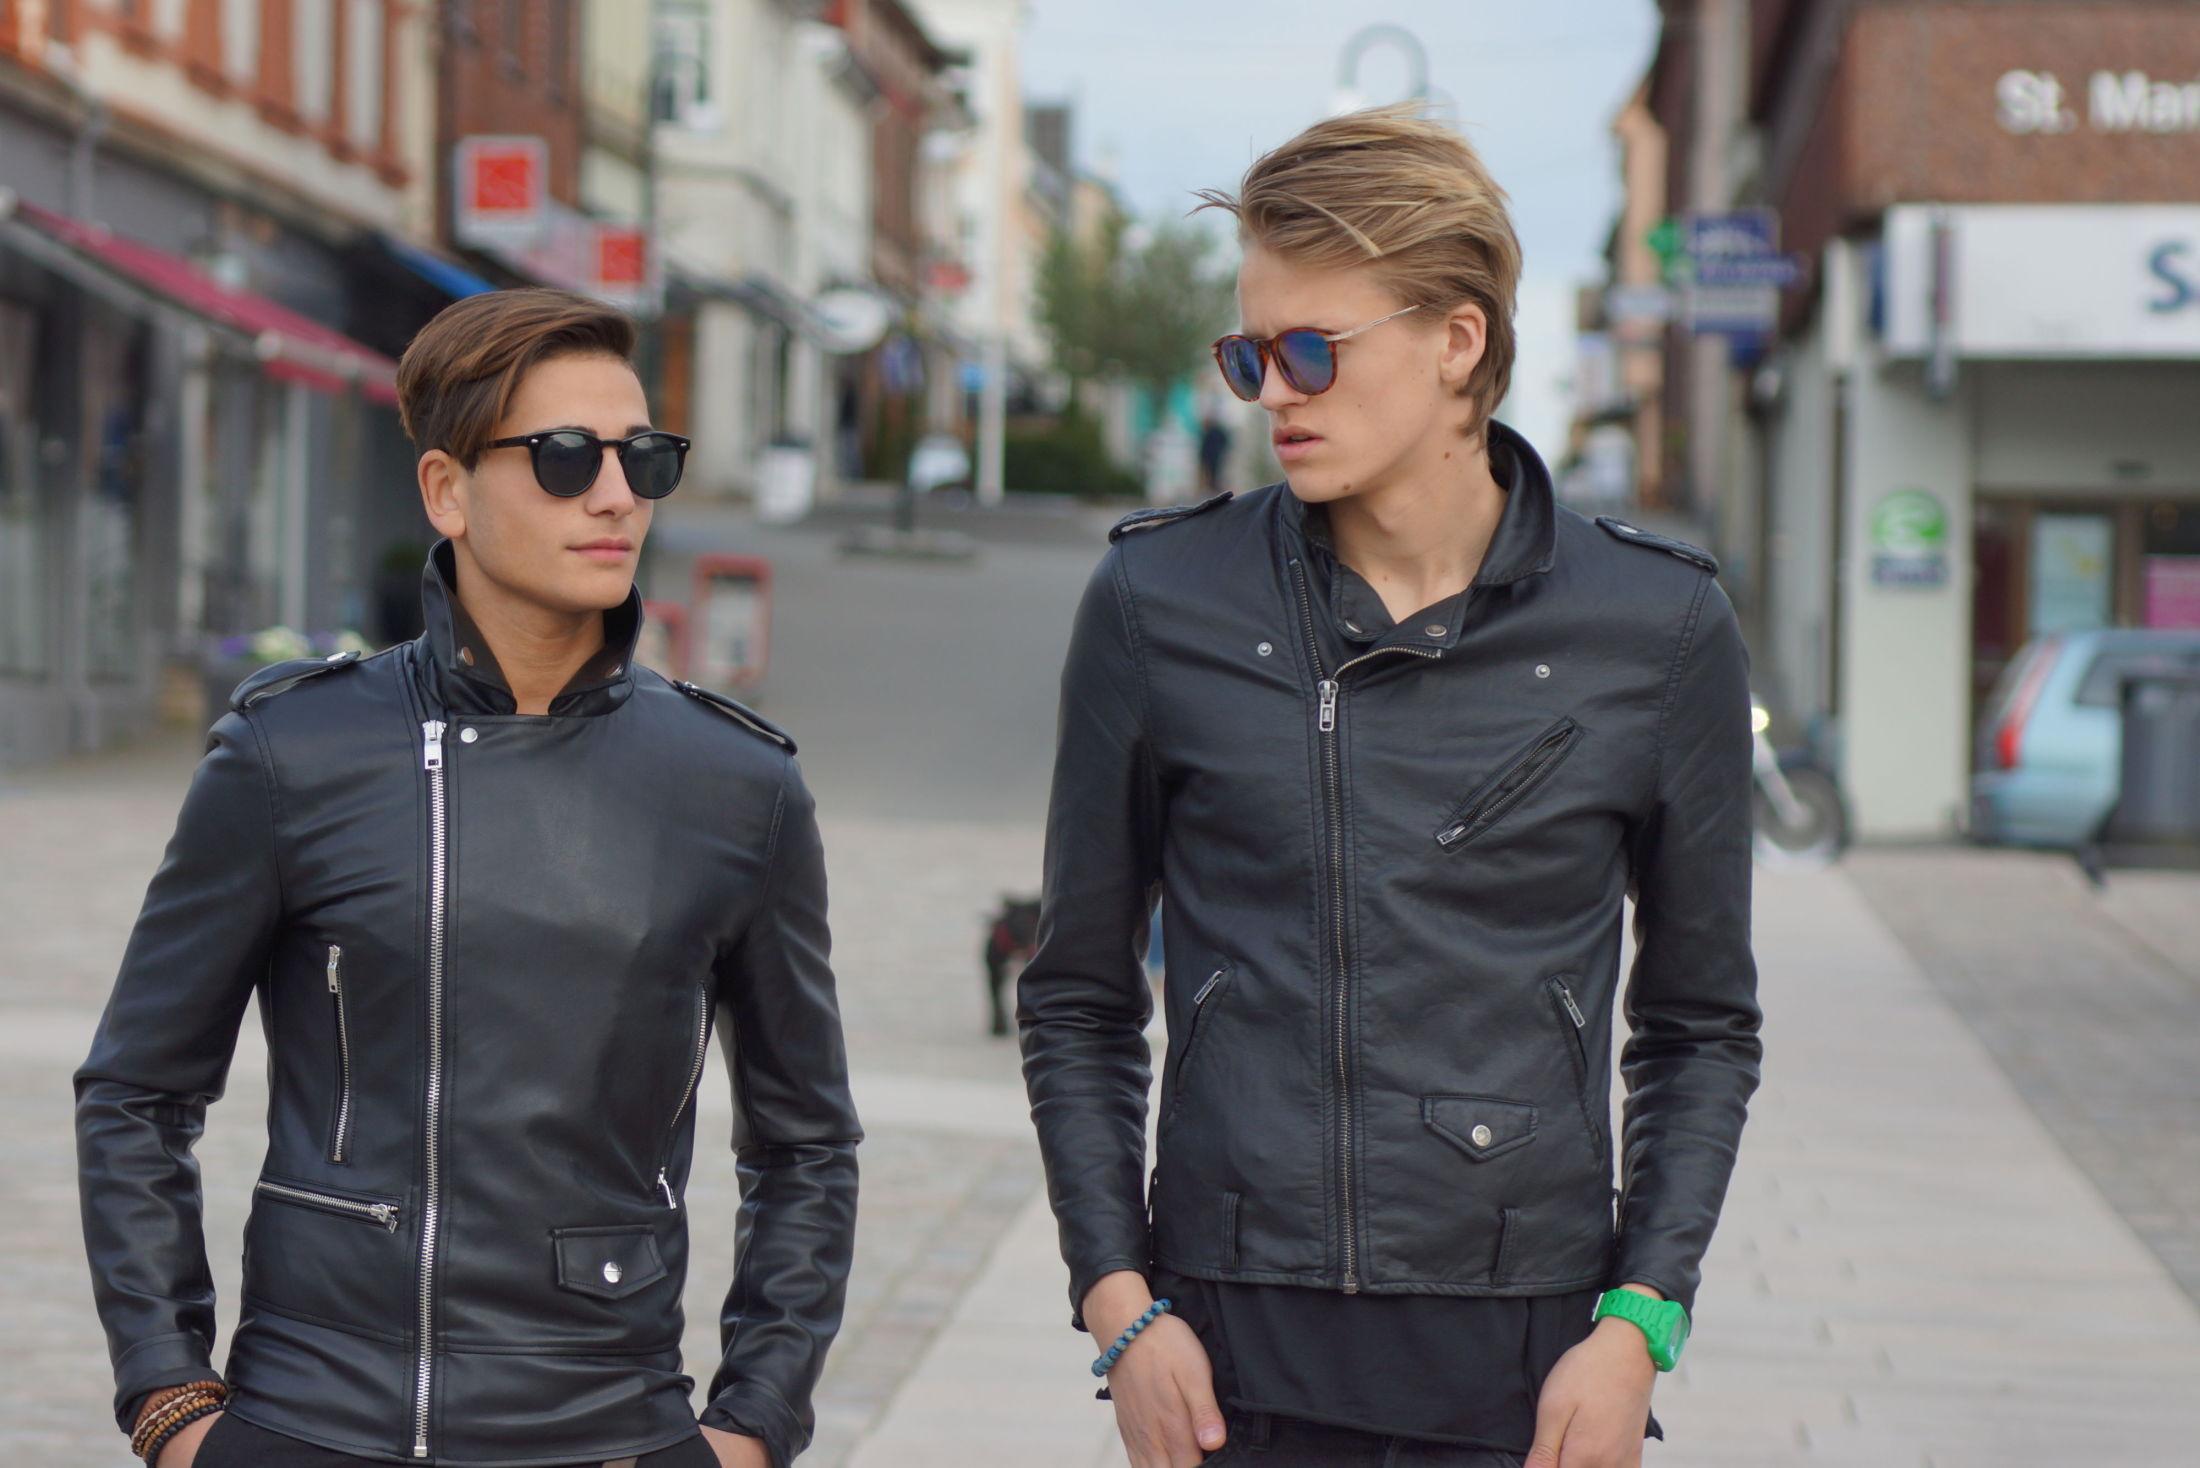 EN KLASSIKER: Anas Wajdy og Marius Langsholdt viser hvordan riktig jakke kan freshe opp vårstilen.